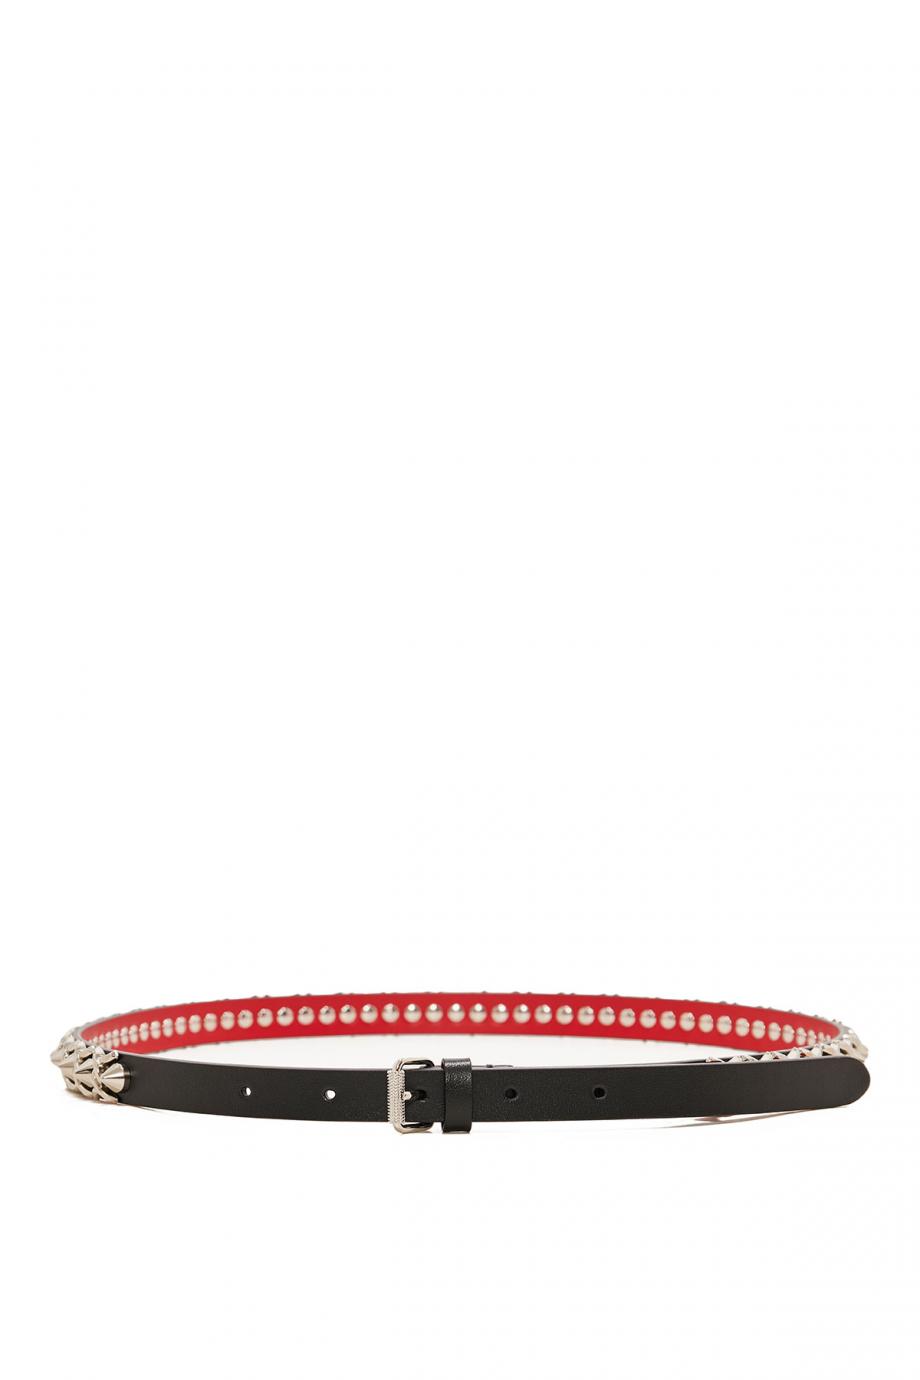 Loubispikes embellished leather belt